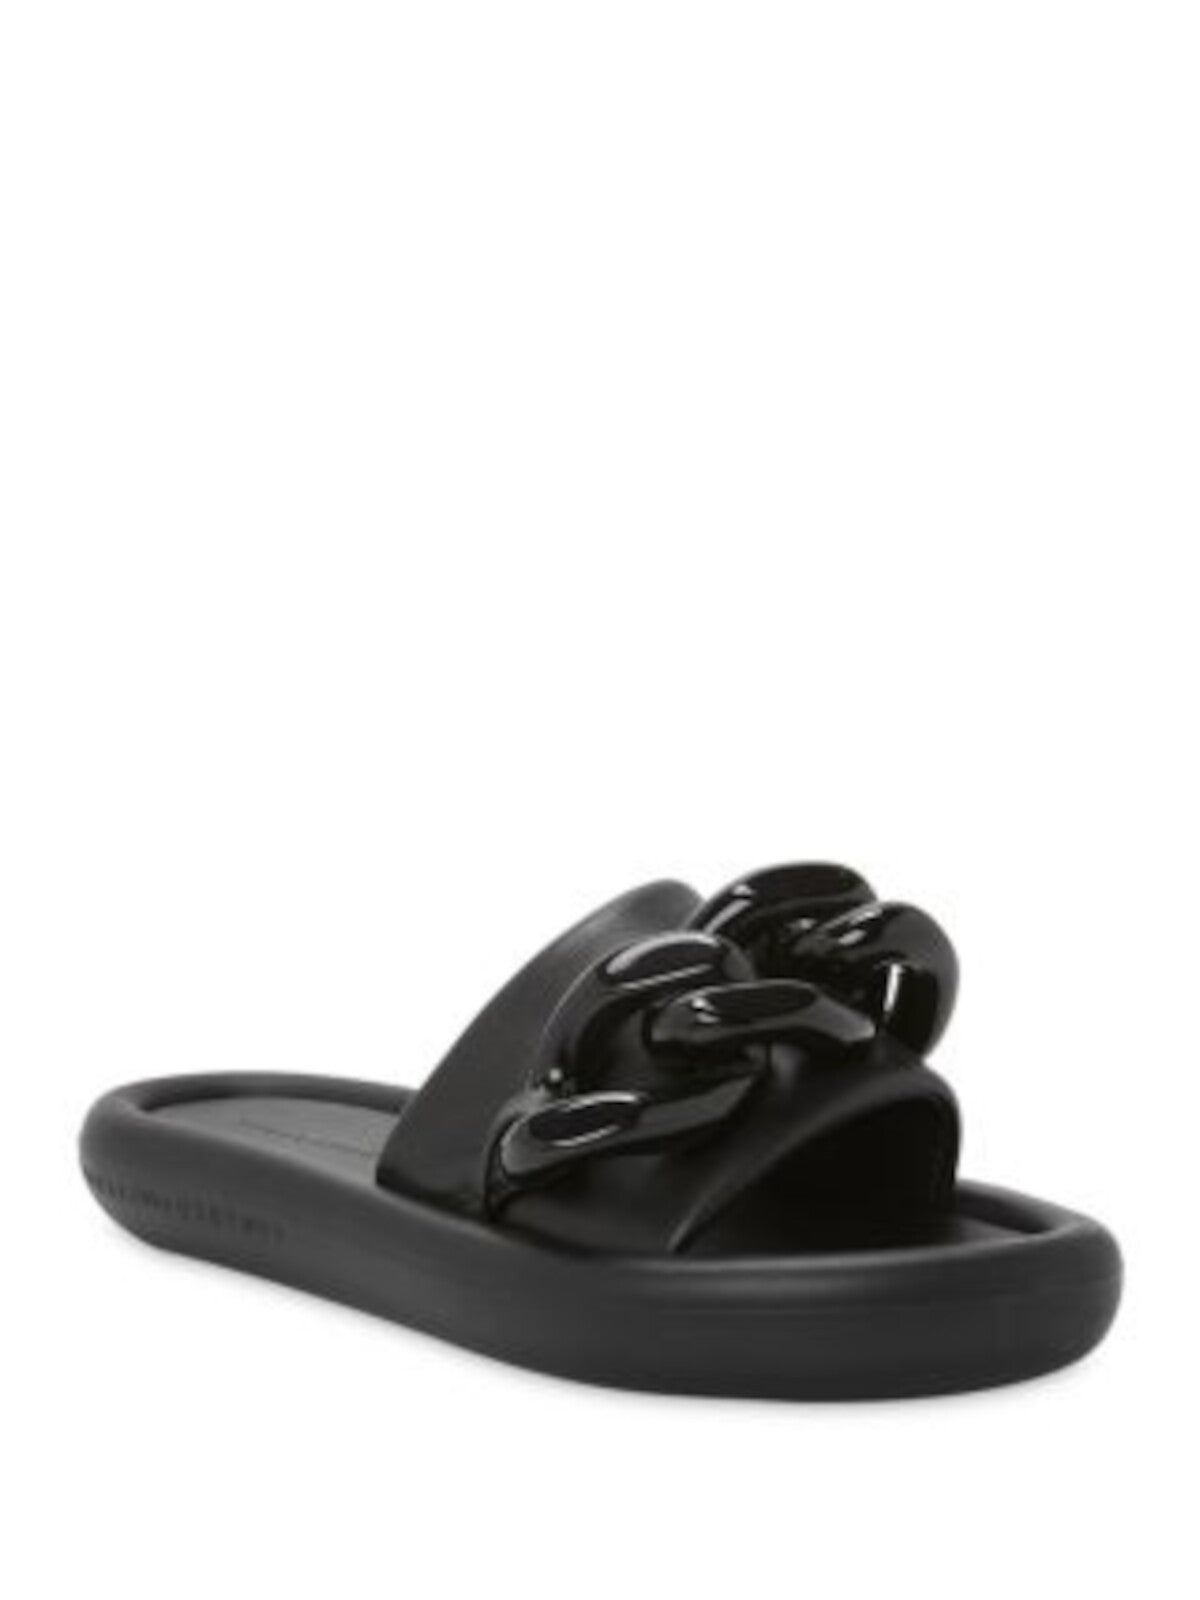 STELLAMCCARTNEY Womens Black Chain Detail Padded Air Slide Open Toe Platform Slide Sandals Shoes 37